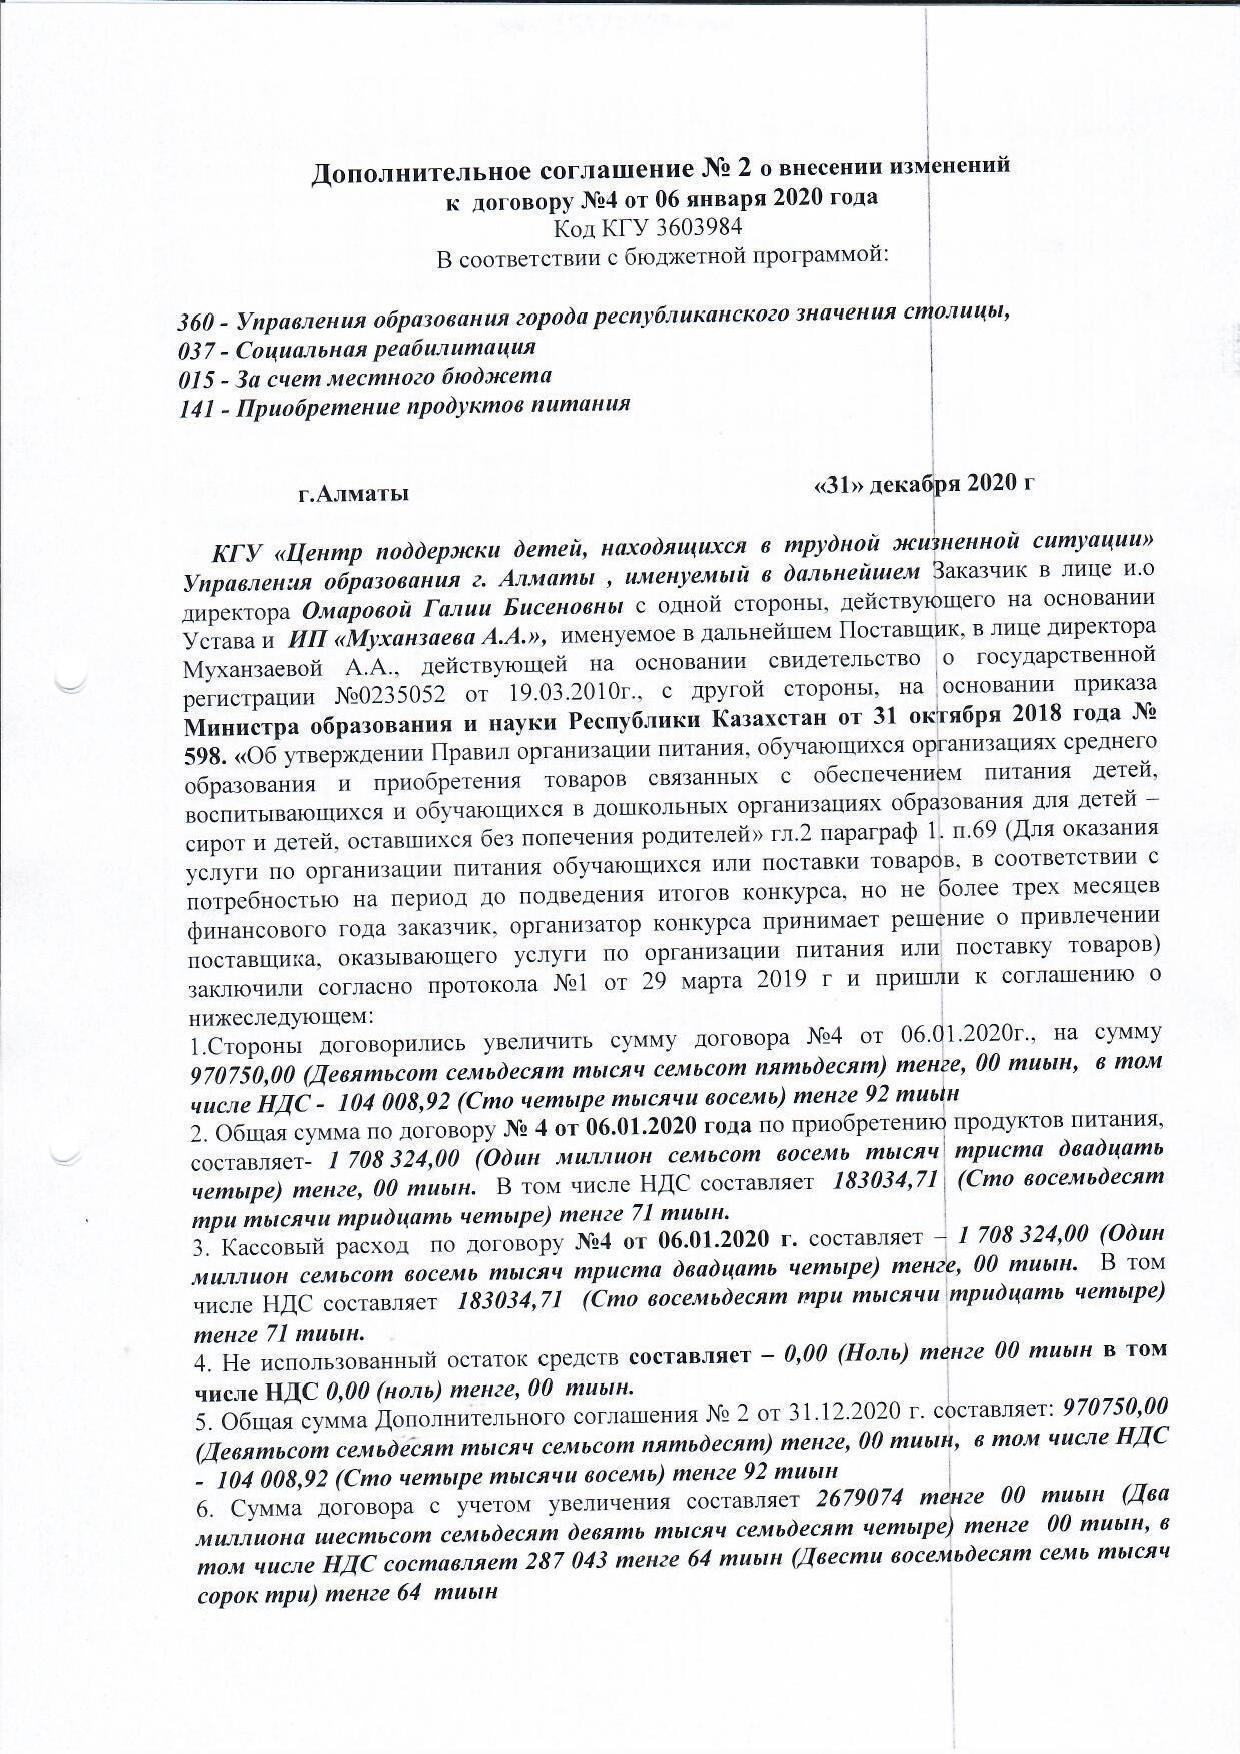 Дополнительное соглашение №2 к договору №4 от 06.01.2020 г ИП "Муханзаева А.А"